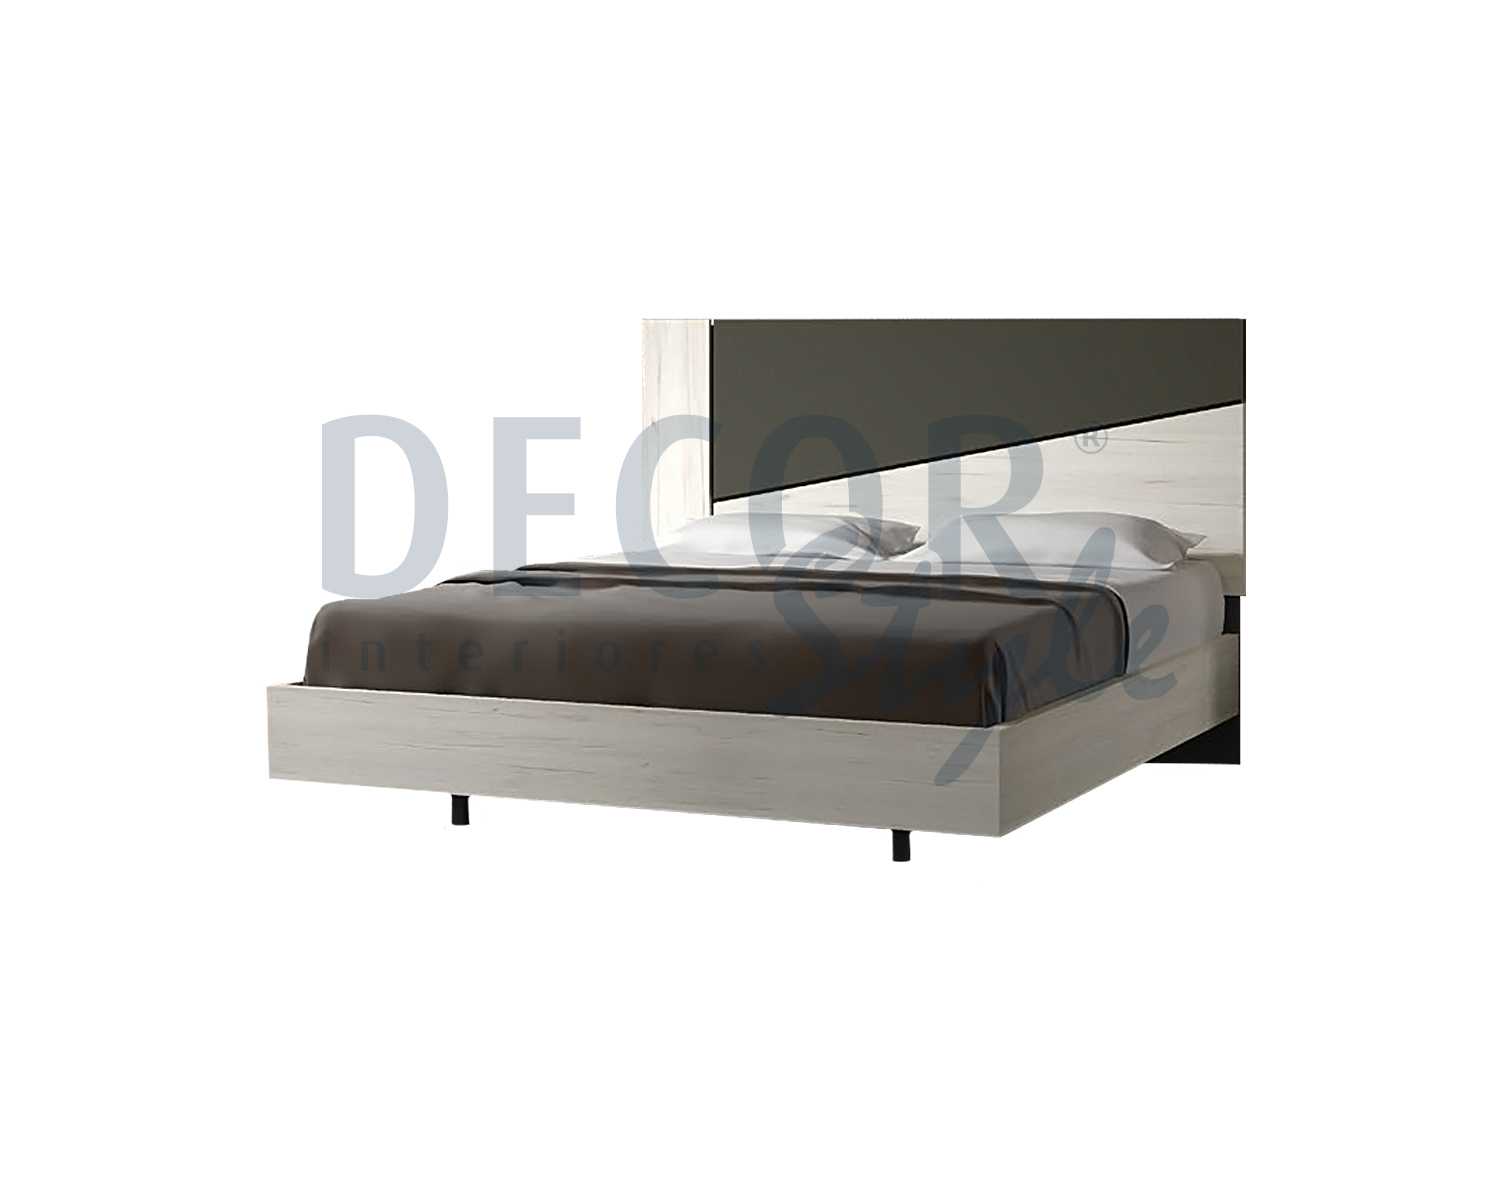 cama de casal prague artic elegante moderna carvalho branco e preto antracite ou carvalho gold dourado moderna minimalista